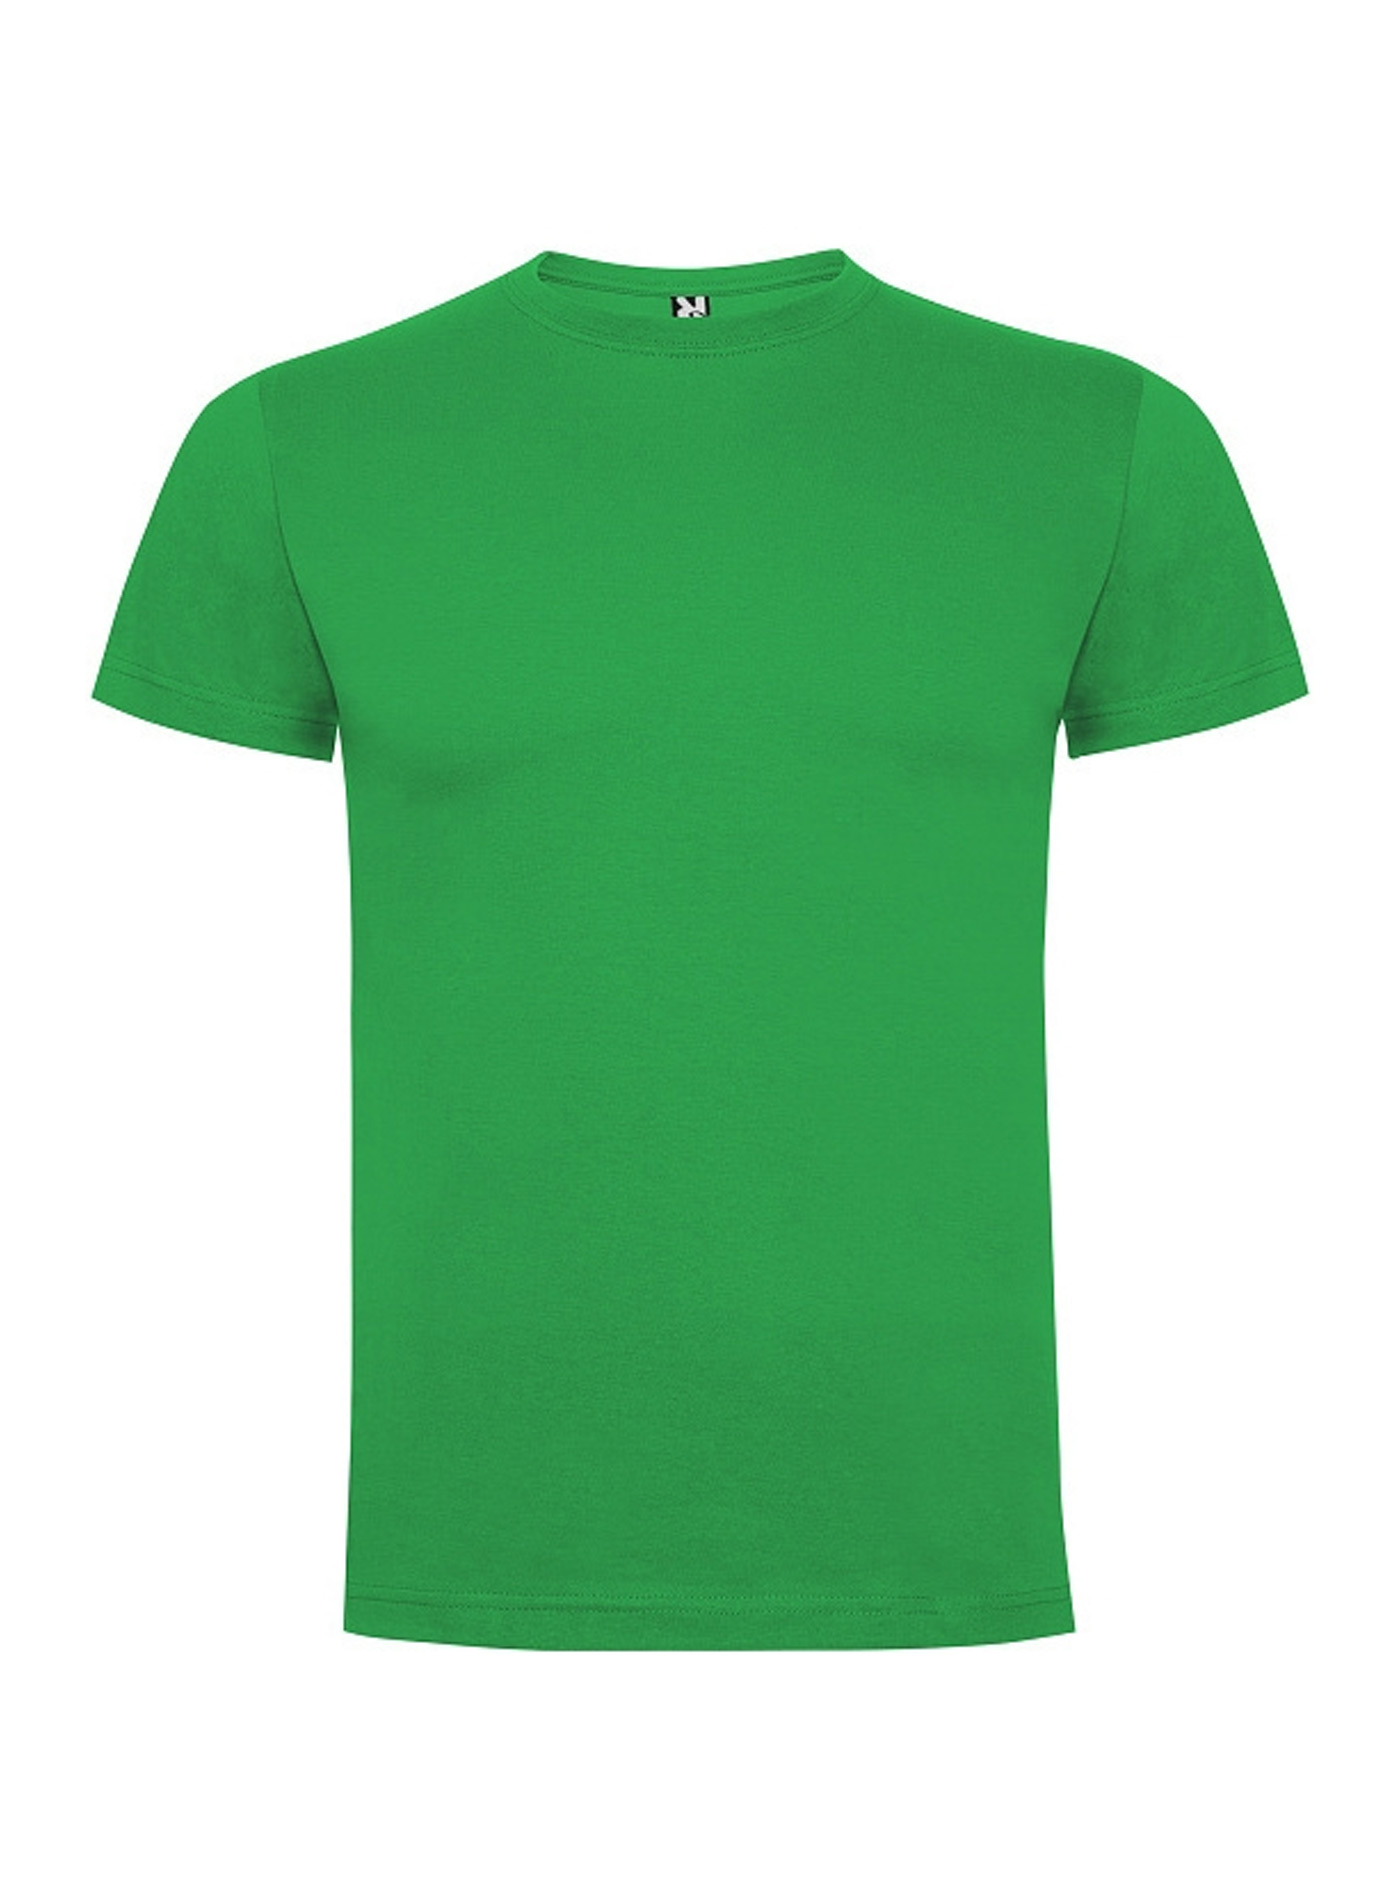 Pánské tričko Roly Dogo premium - Irská zelená L